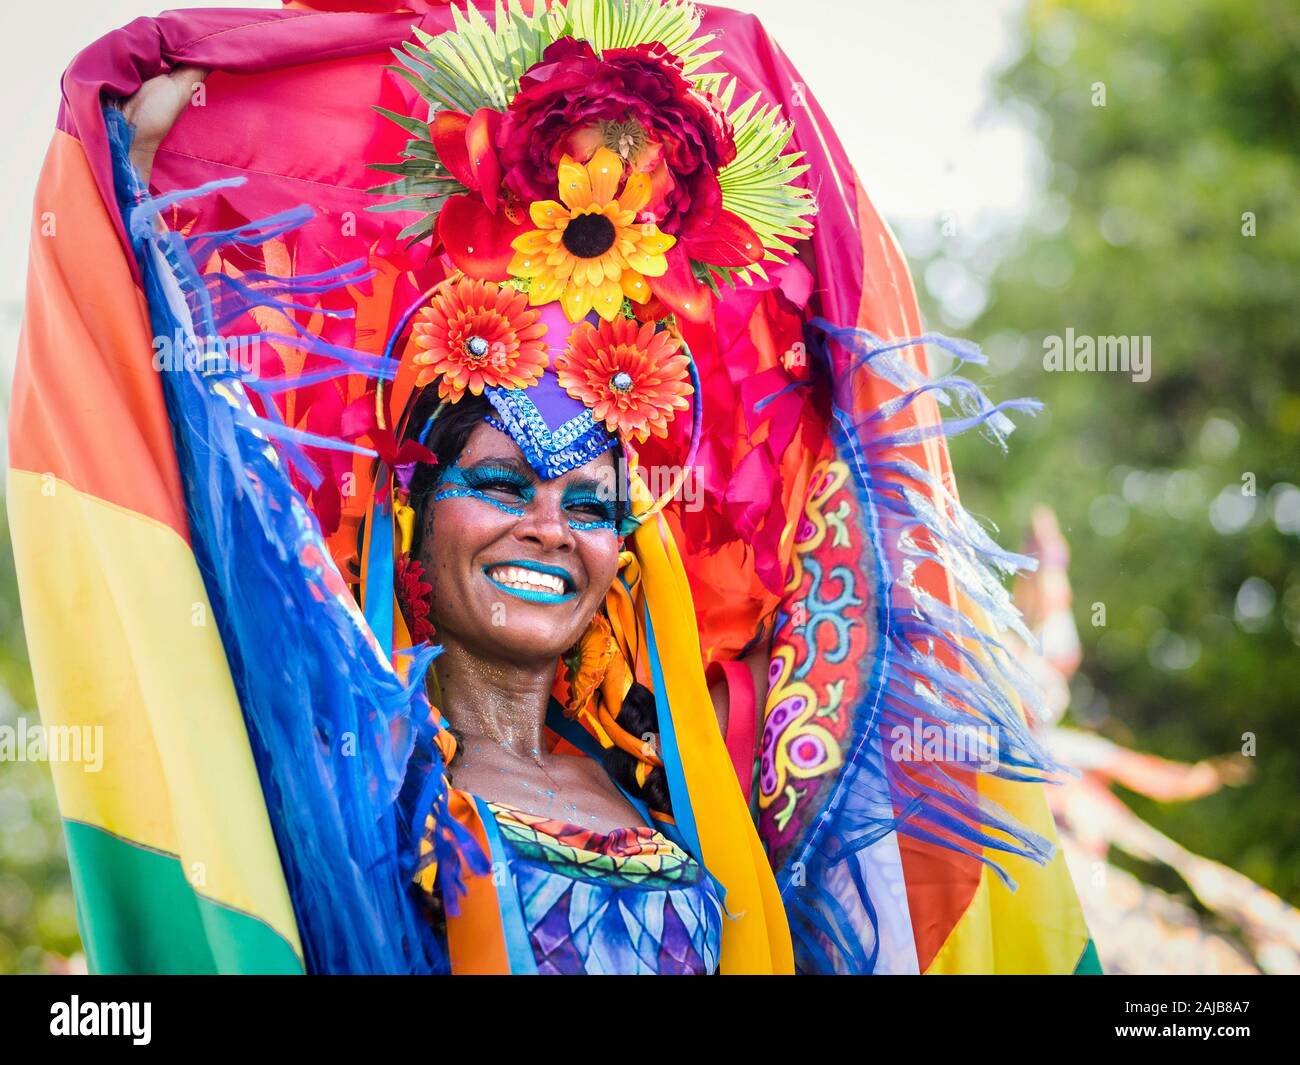 Hermosa mujer brasileña vestida con colorido disfraz de carnaval y bandera  de brasil durante el carnaval en la calle p